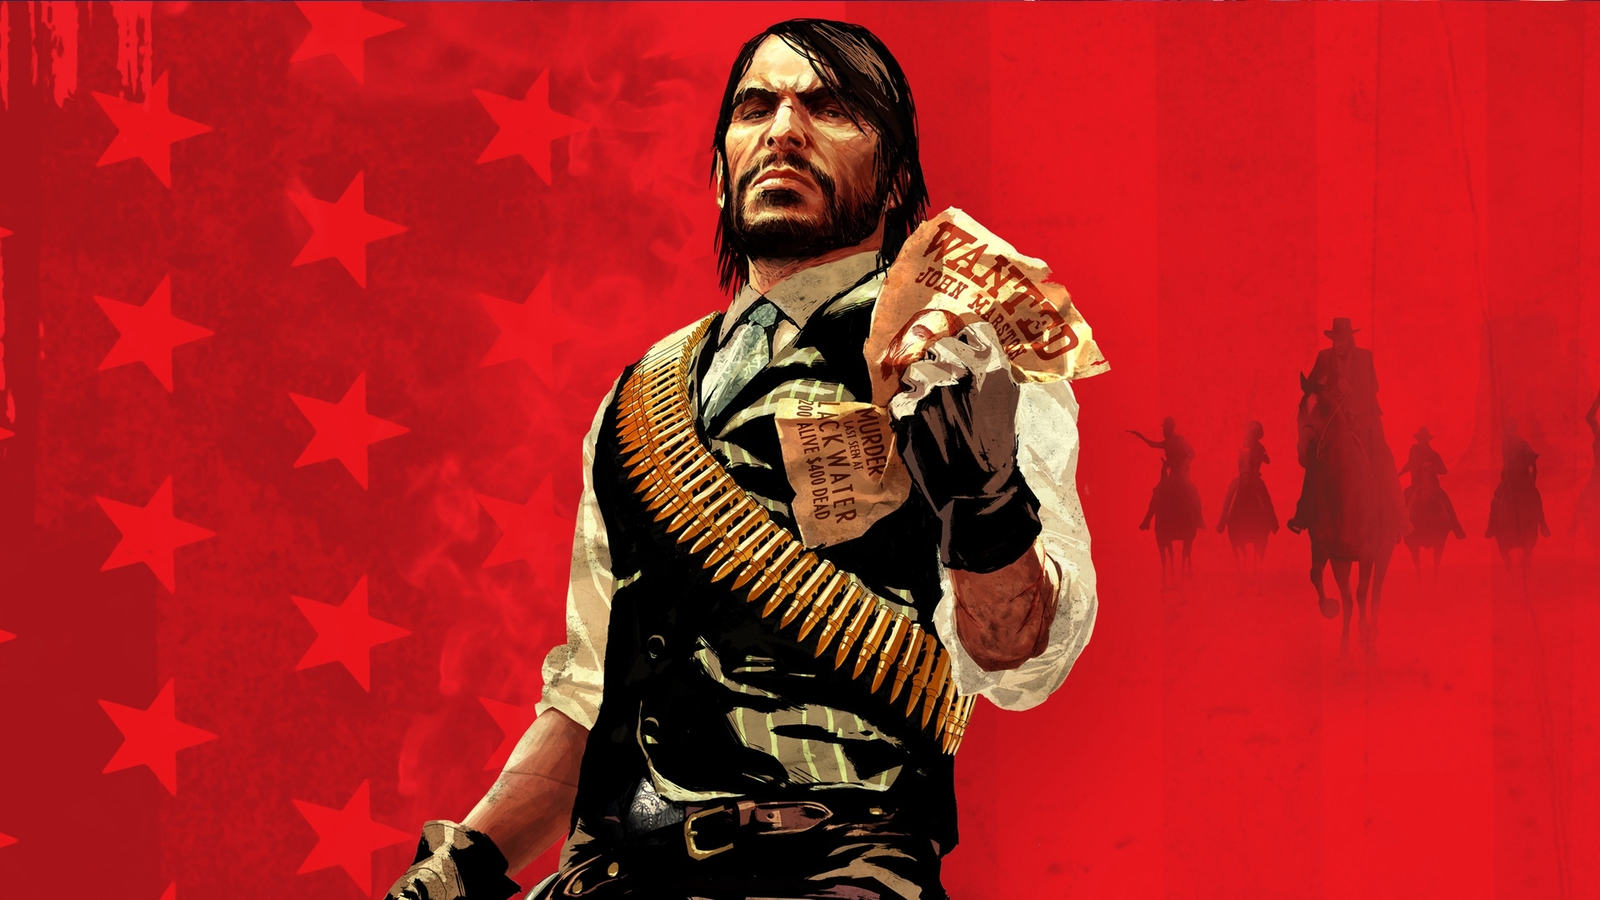 følelse I første omgang Kom op Red Dead Redemption remaster rumours swirl | Eurogamer.net